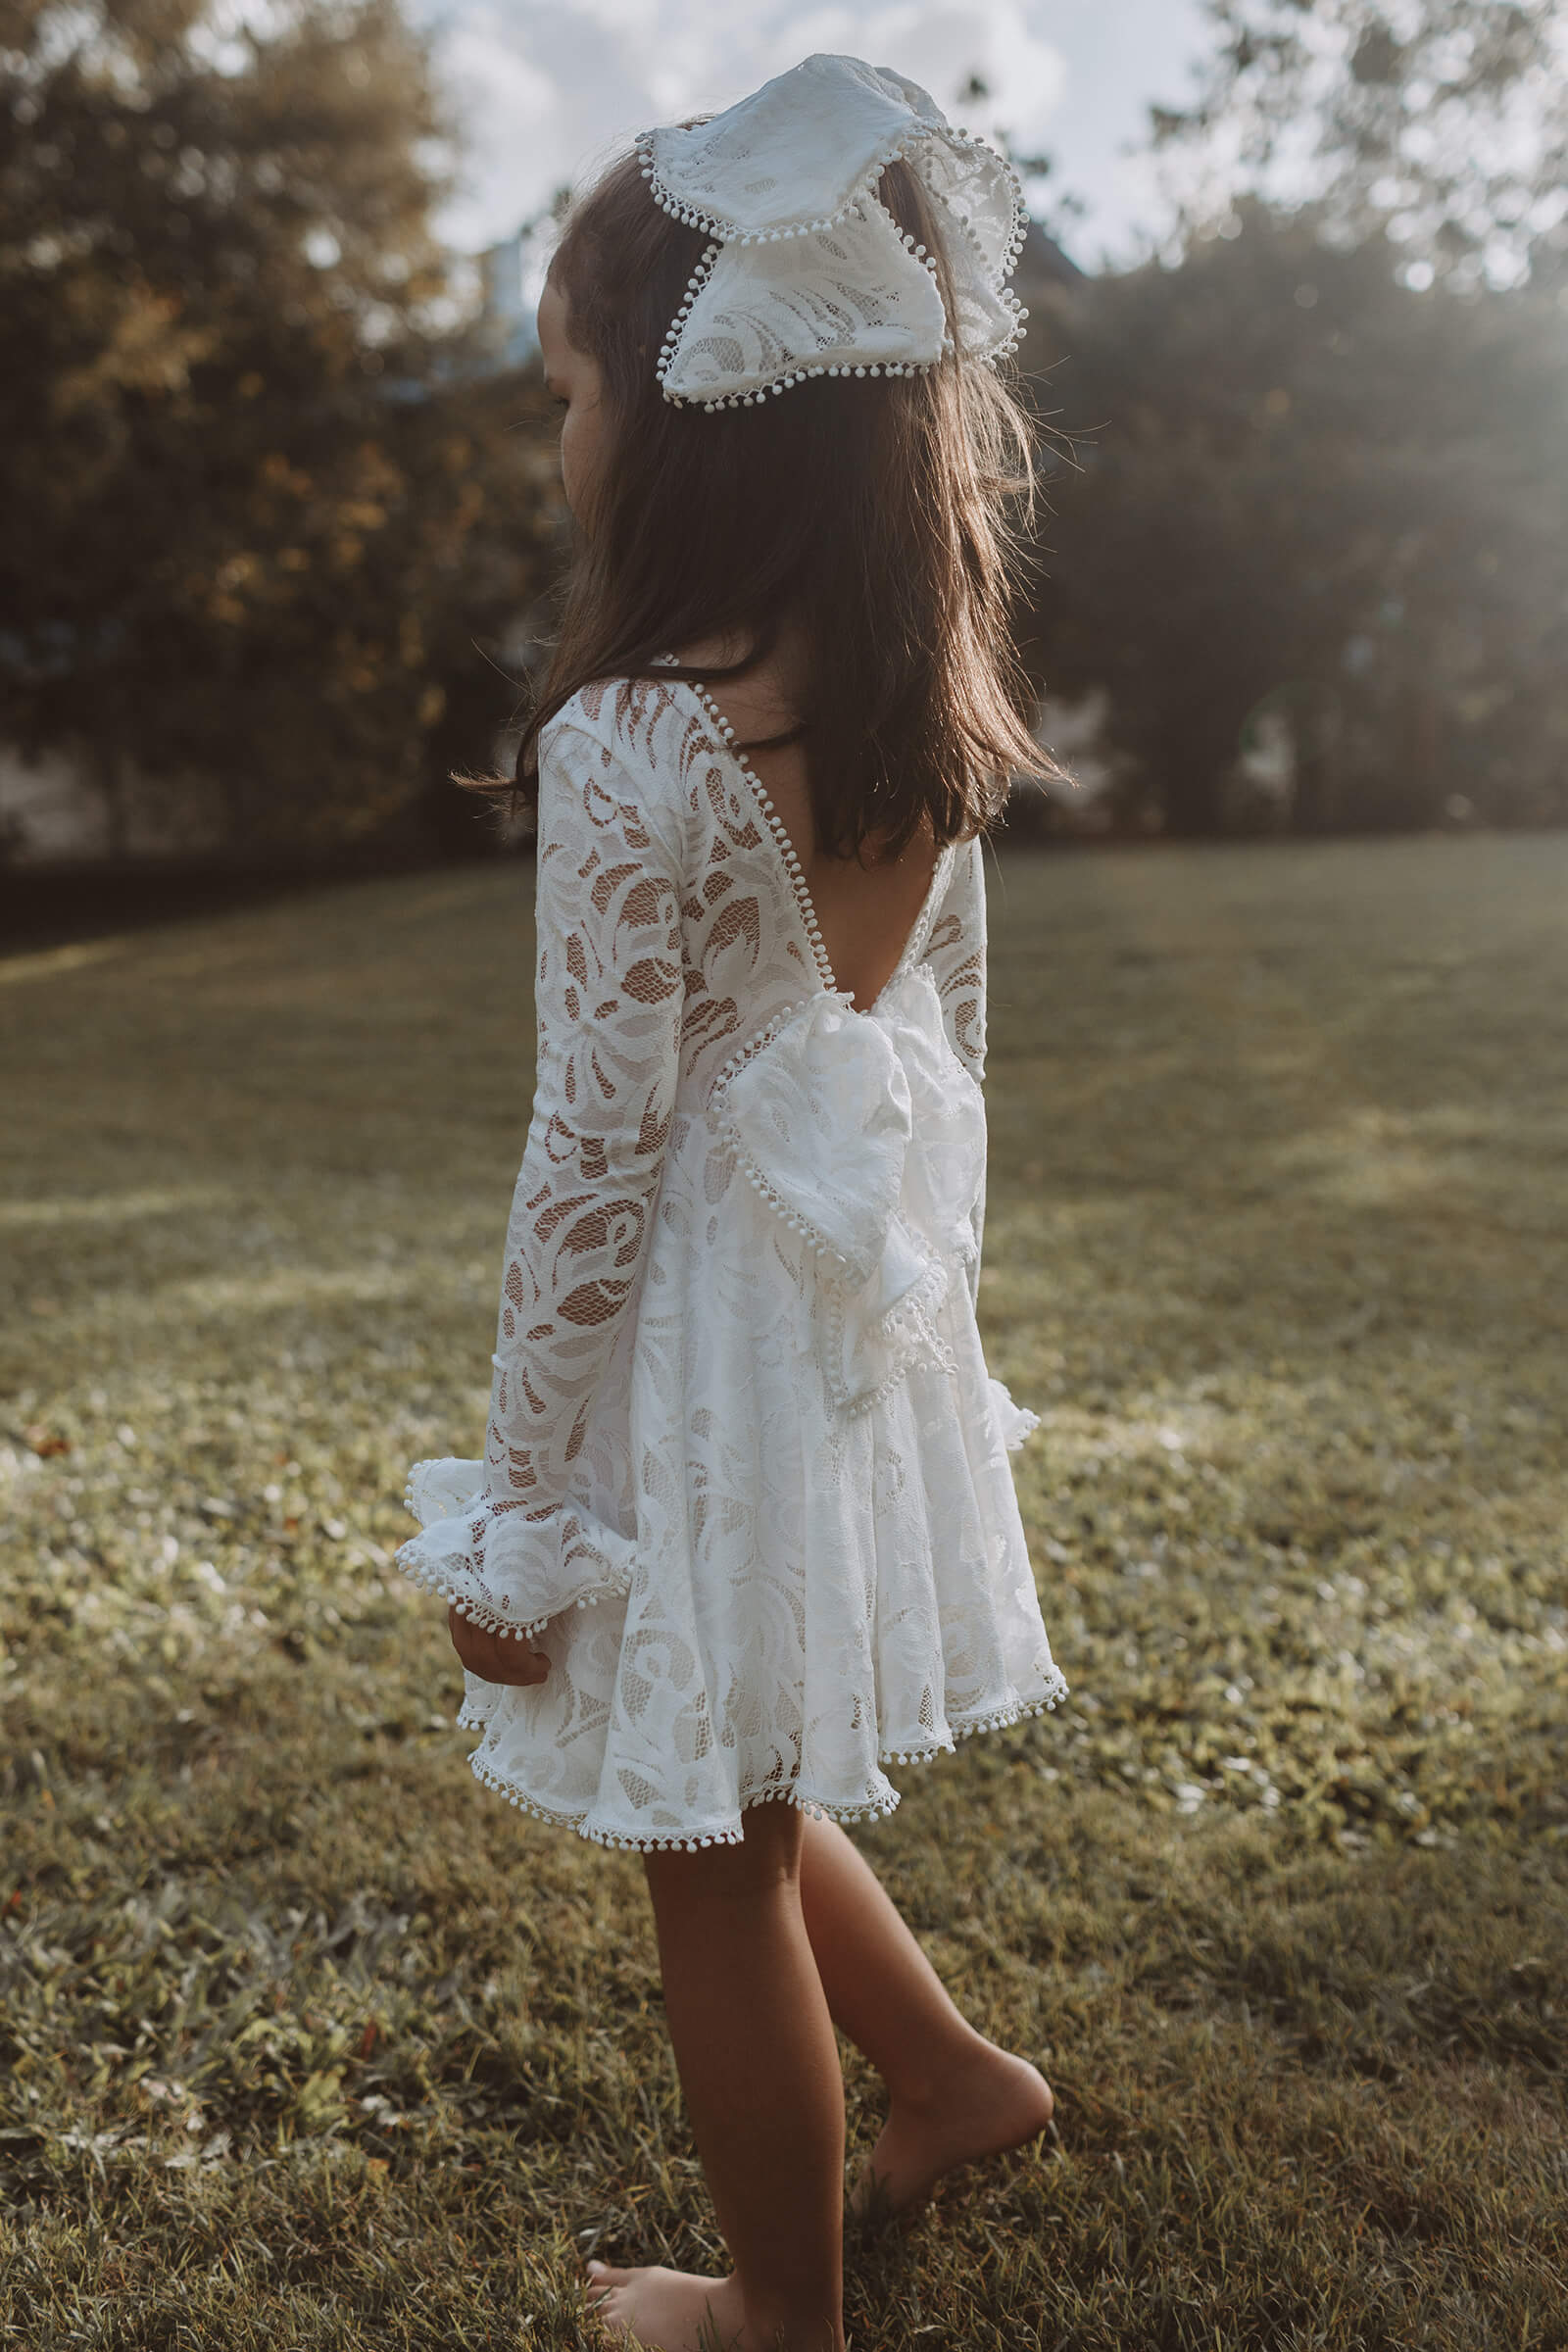 J Andreatta Fiore Mini Wedding Dress - Browns Bride